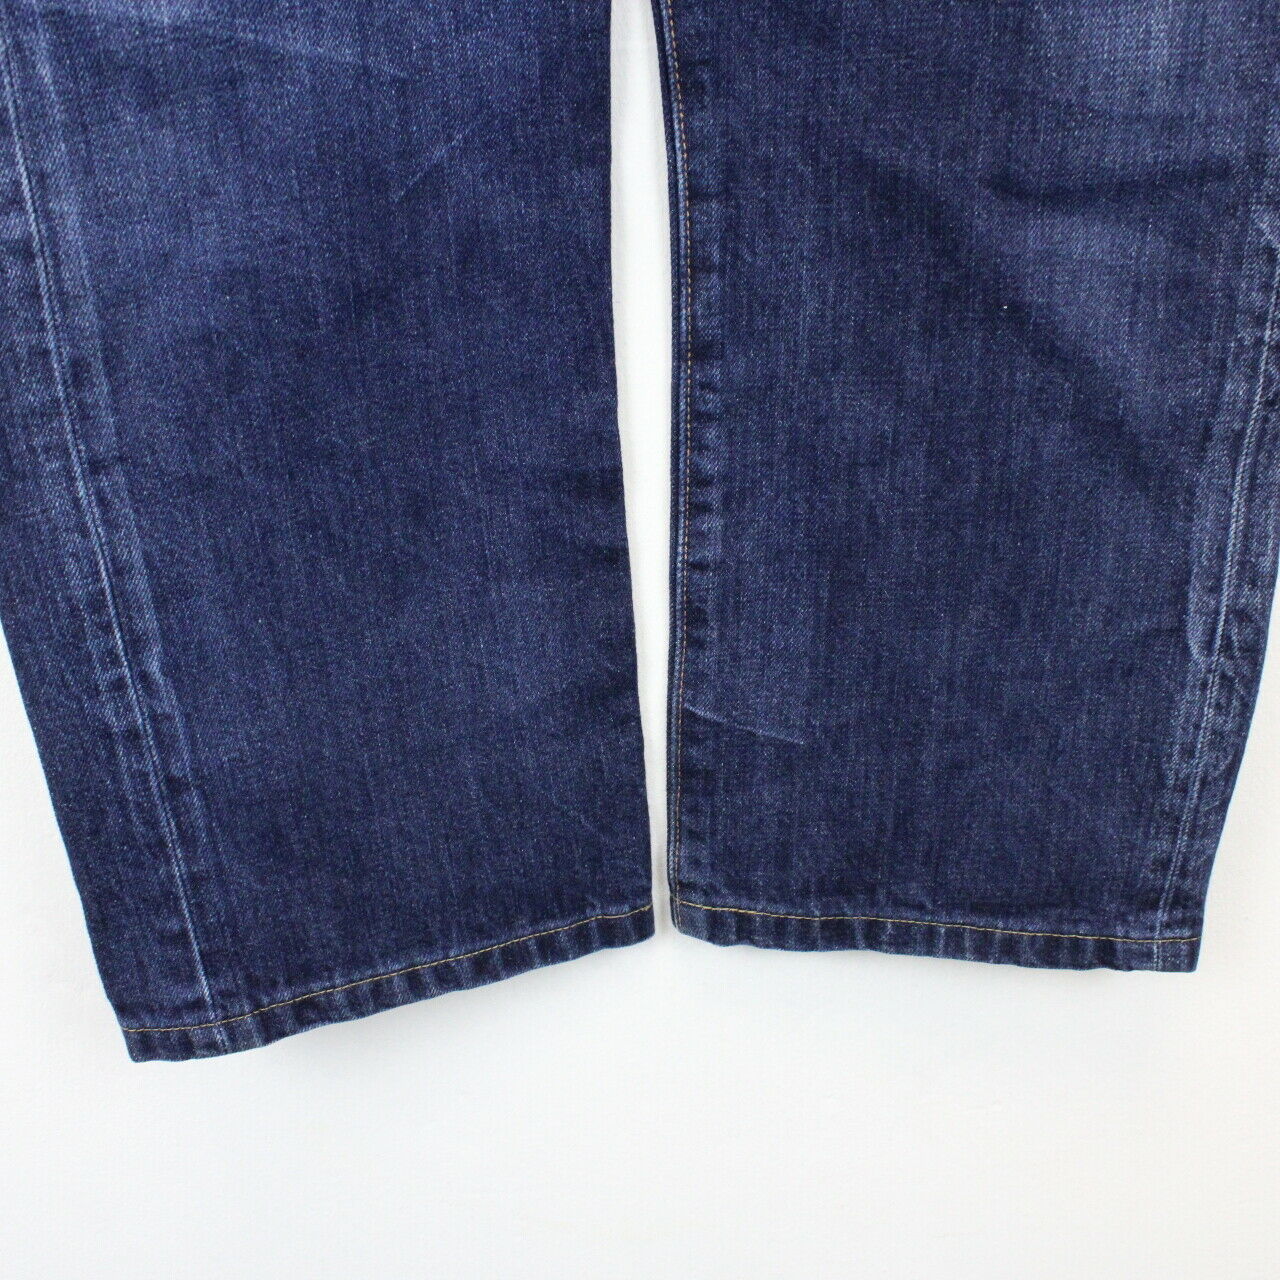 Womens LEVIS 501 Jeans Dark Blue | W32 L26